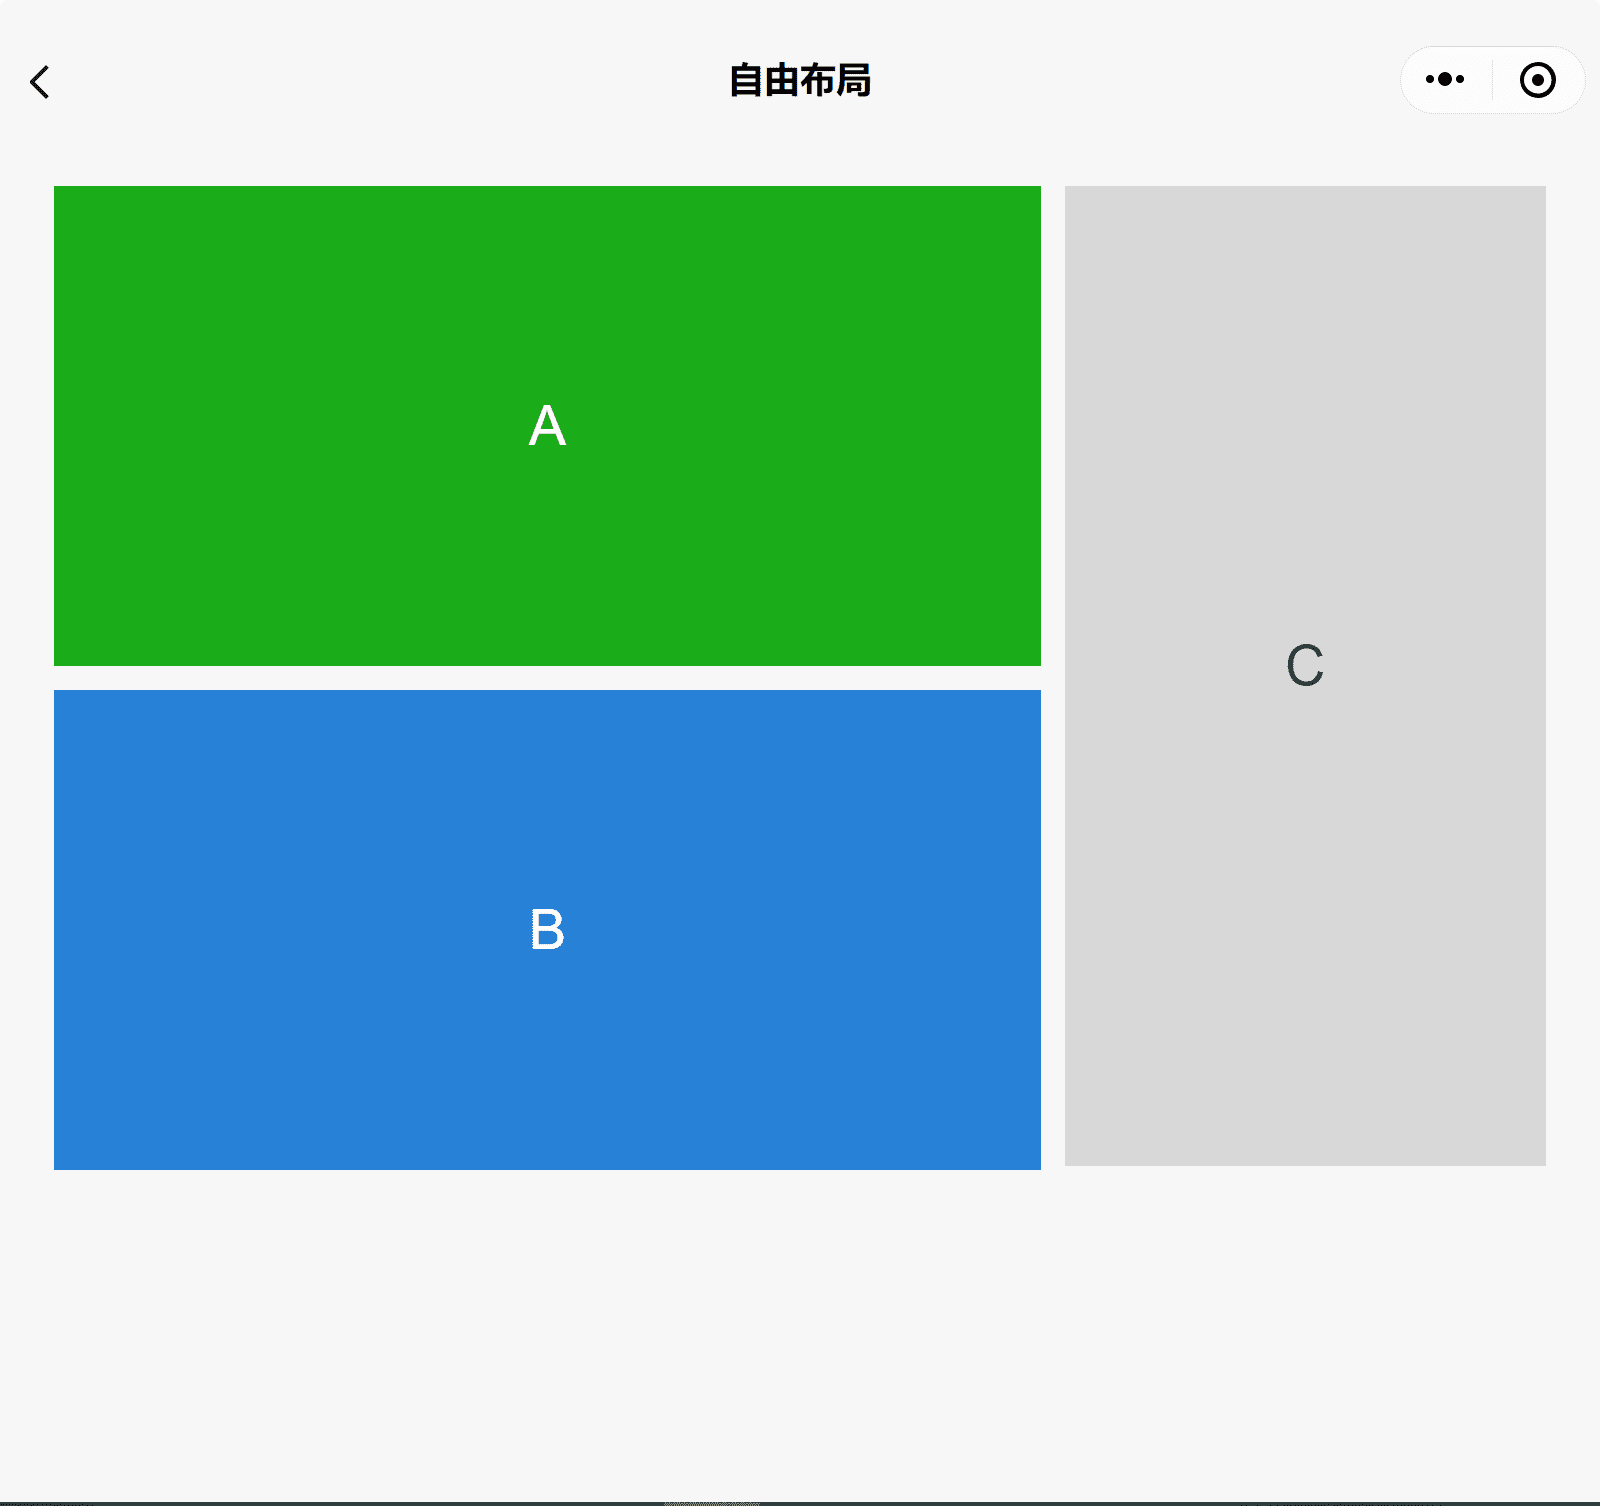 Application de démonstration des composants WeChat dans une grande fenêtre montrant trois cases A, B et C, avec A empilé sur B et C sur le côté.